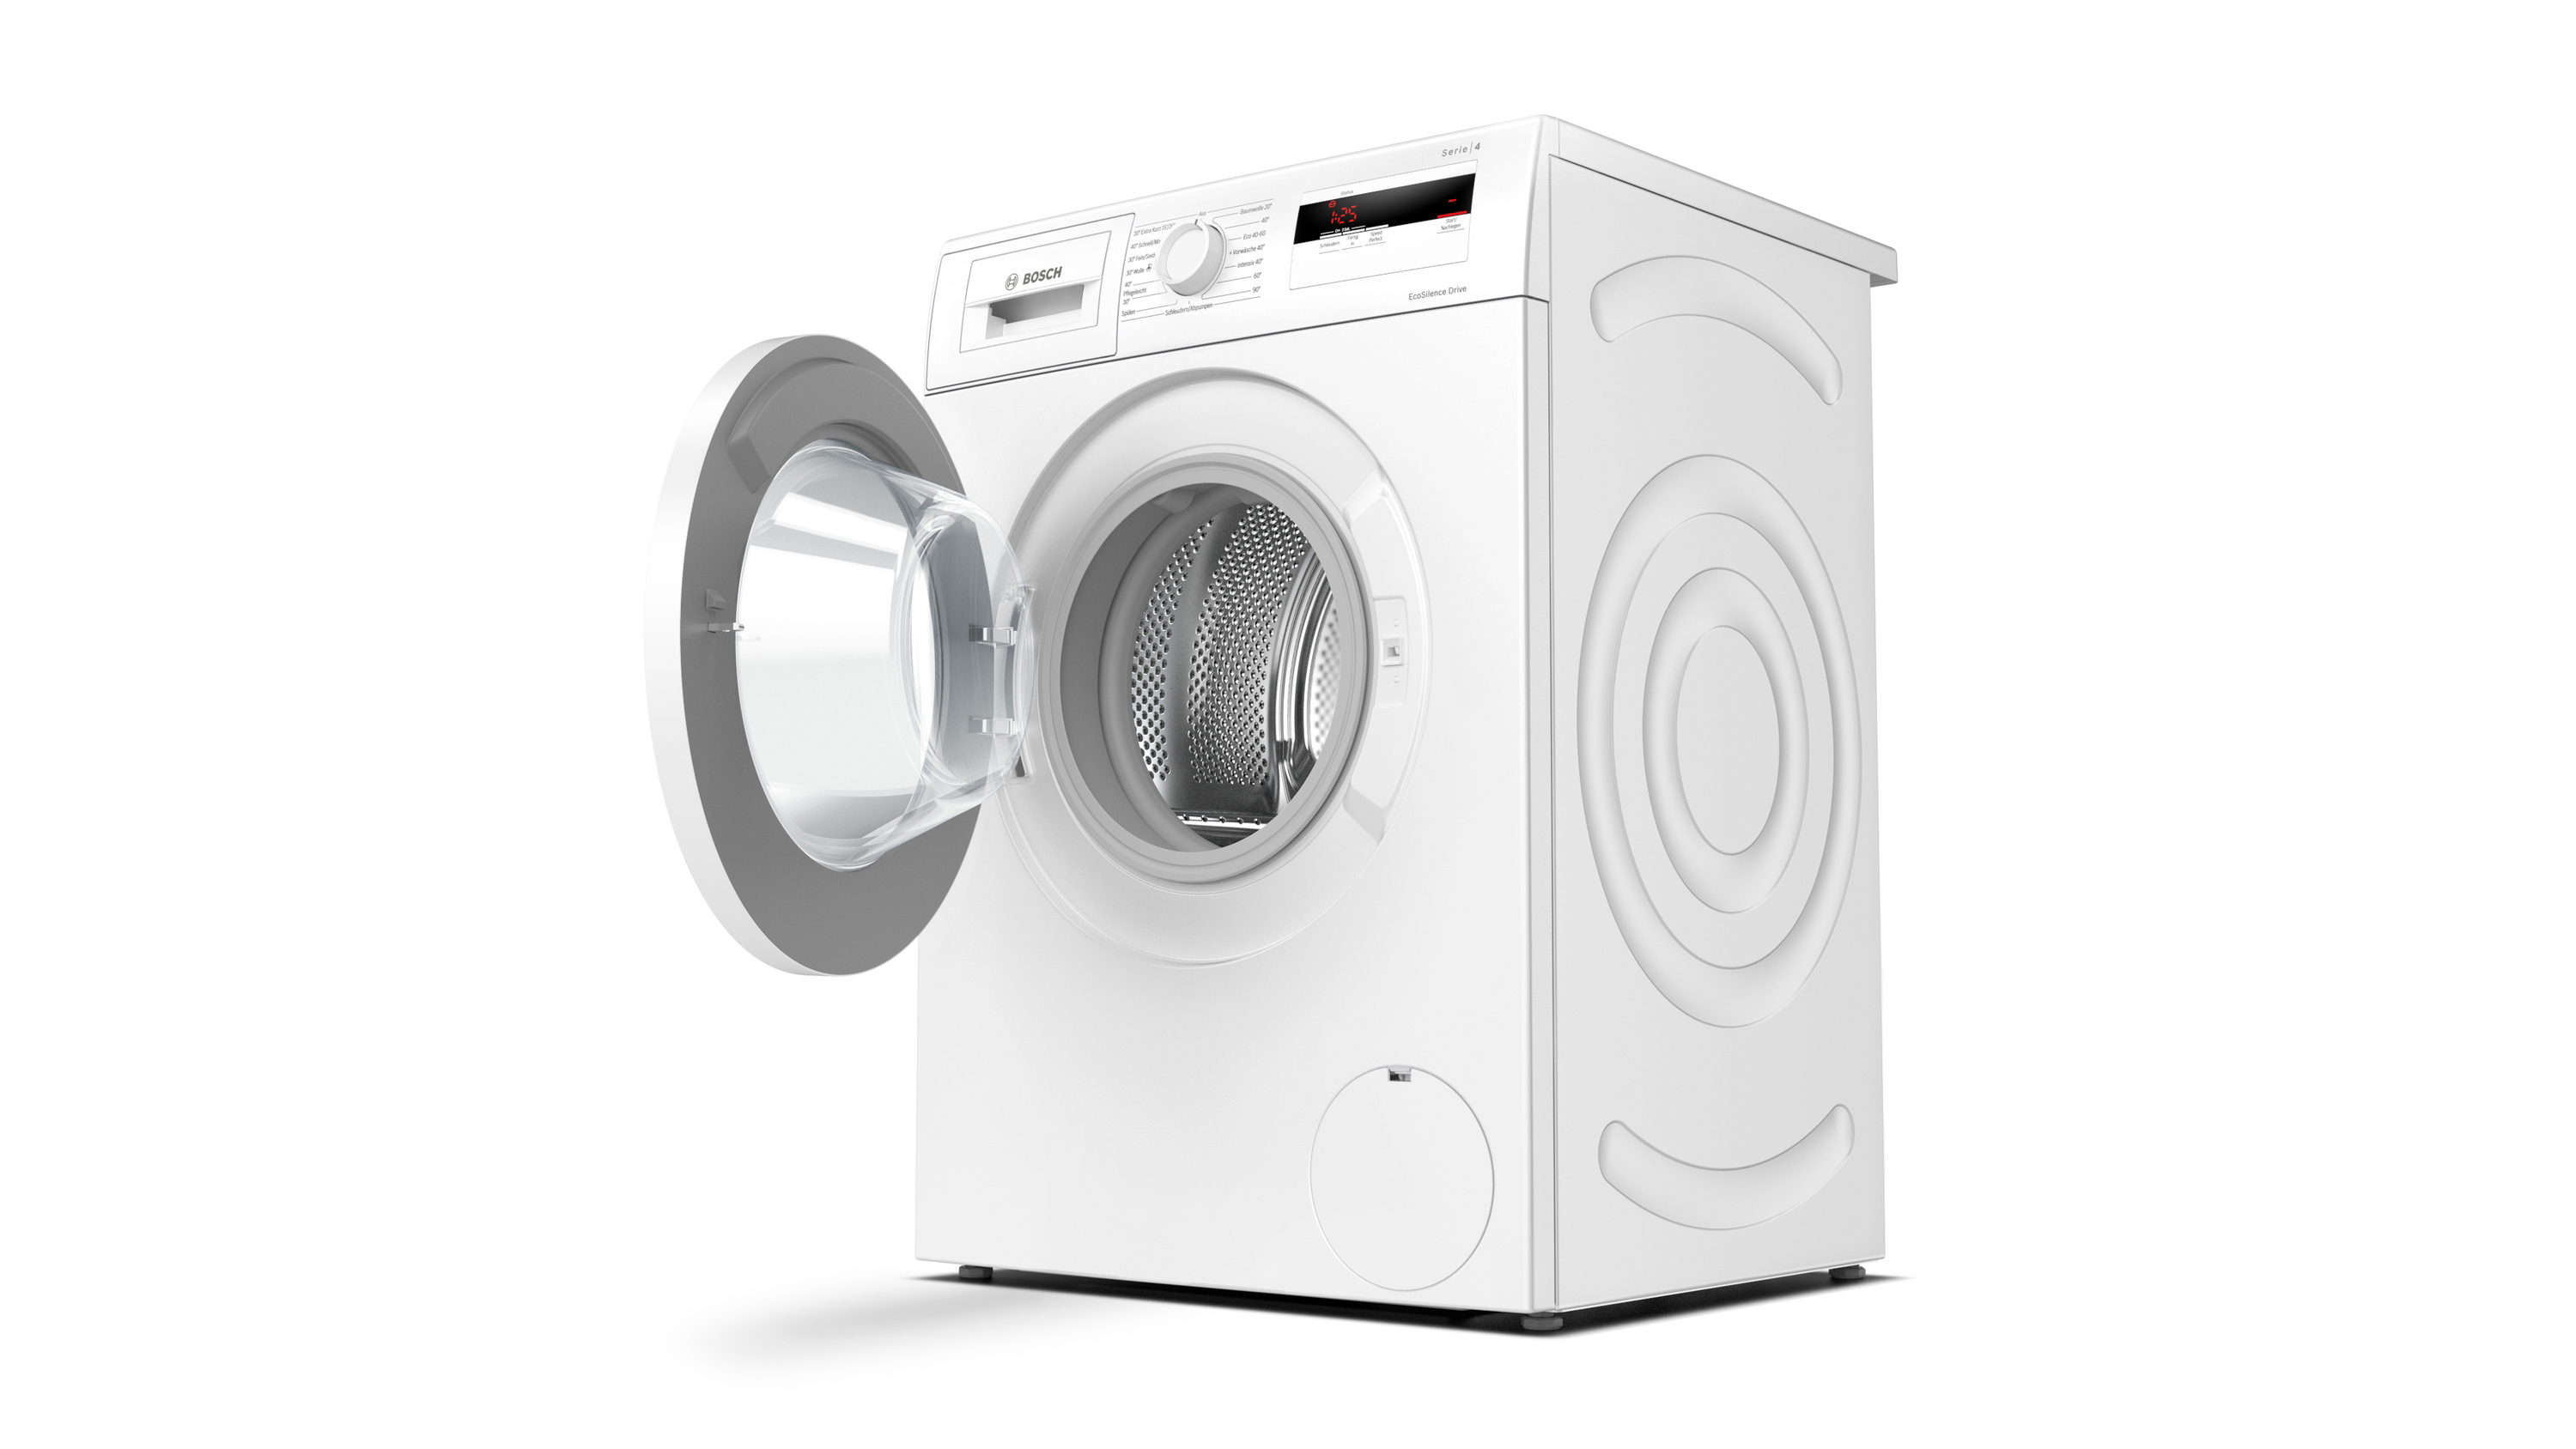 Serie U/Min., BOSCH Waschmaschine 4 1400 (7 kg, WAN280A2 D)